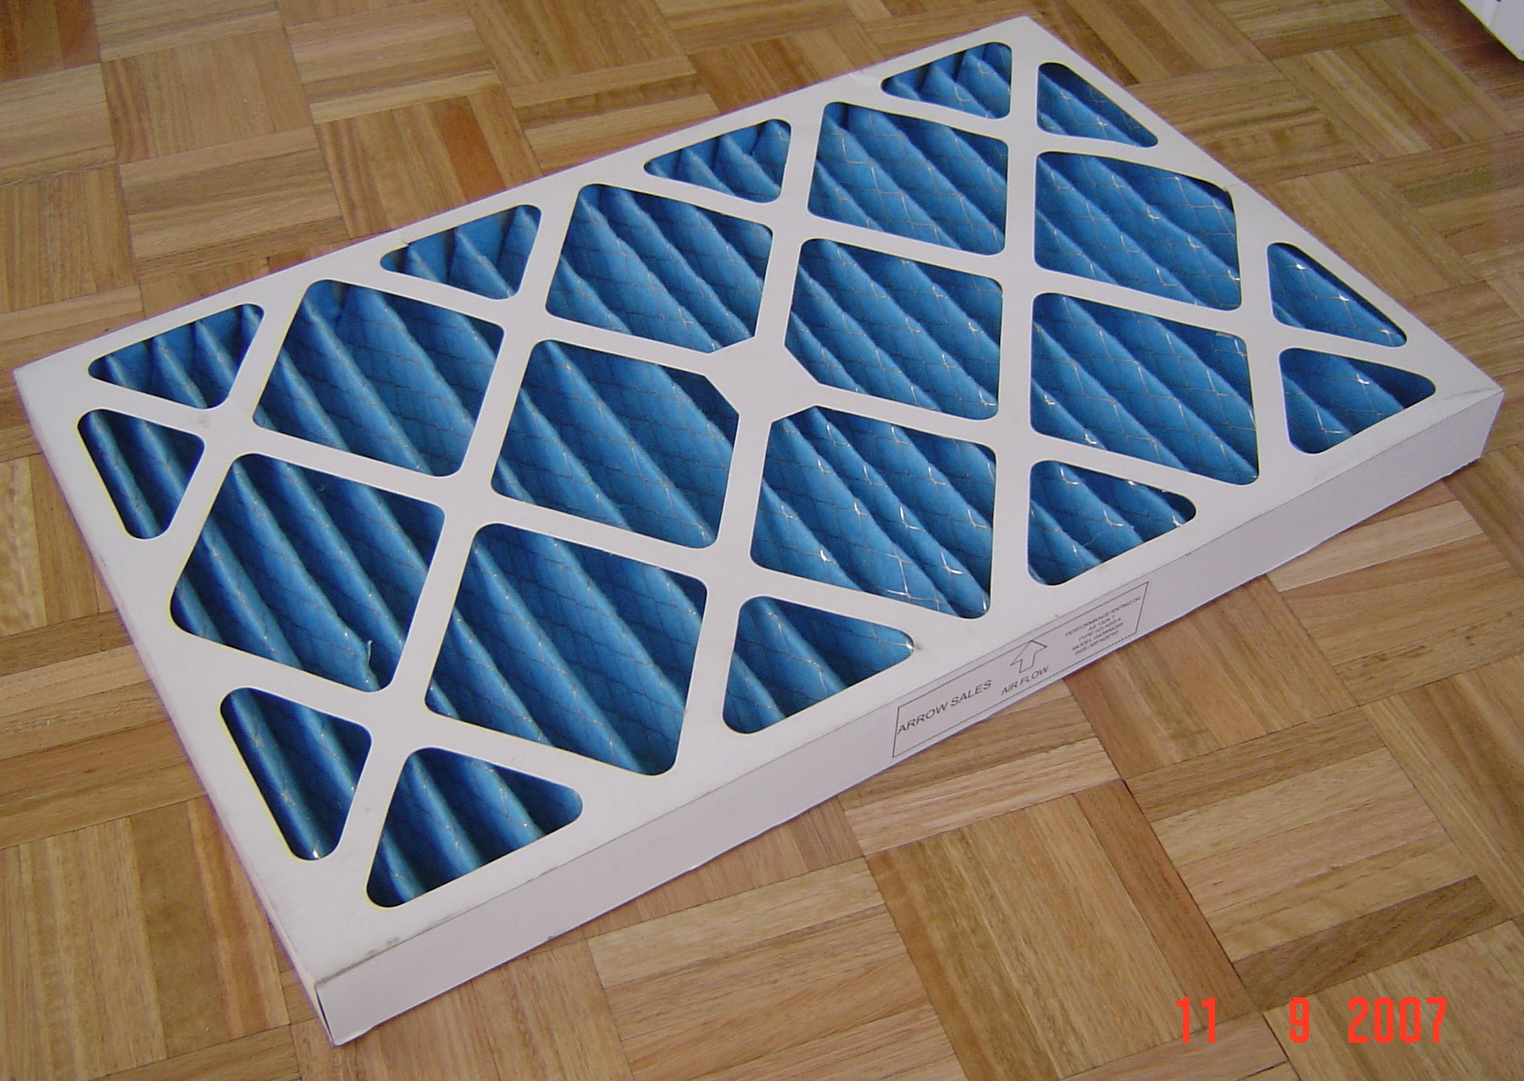 100mm Cardboard Filter 711(28)x762(30)  